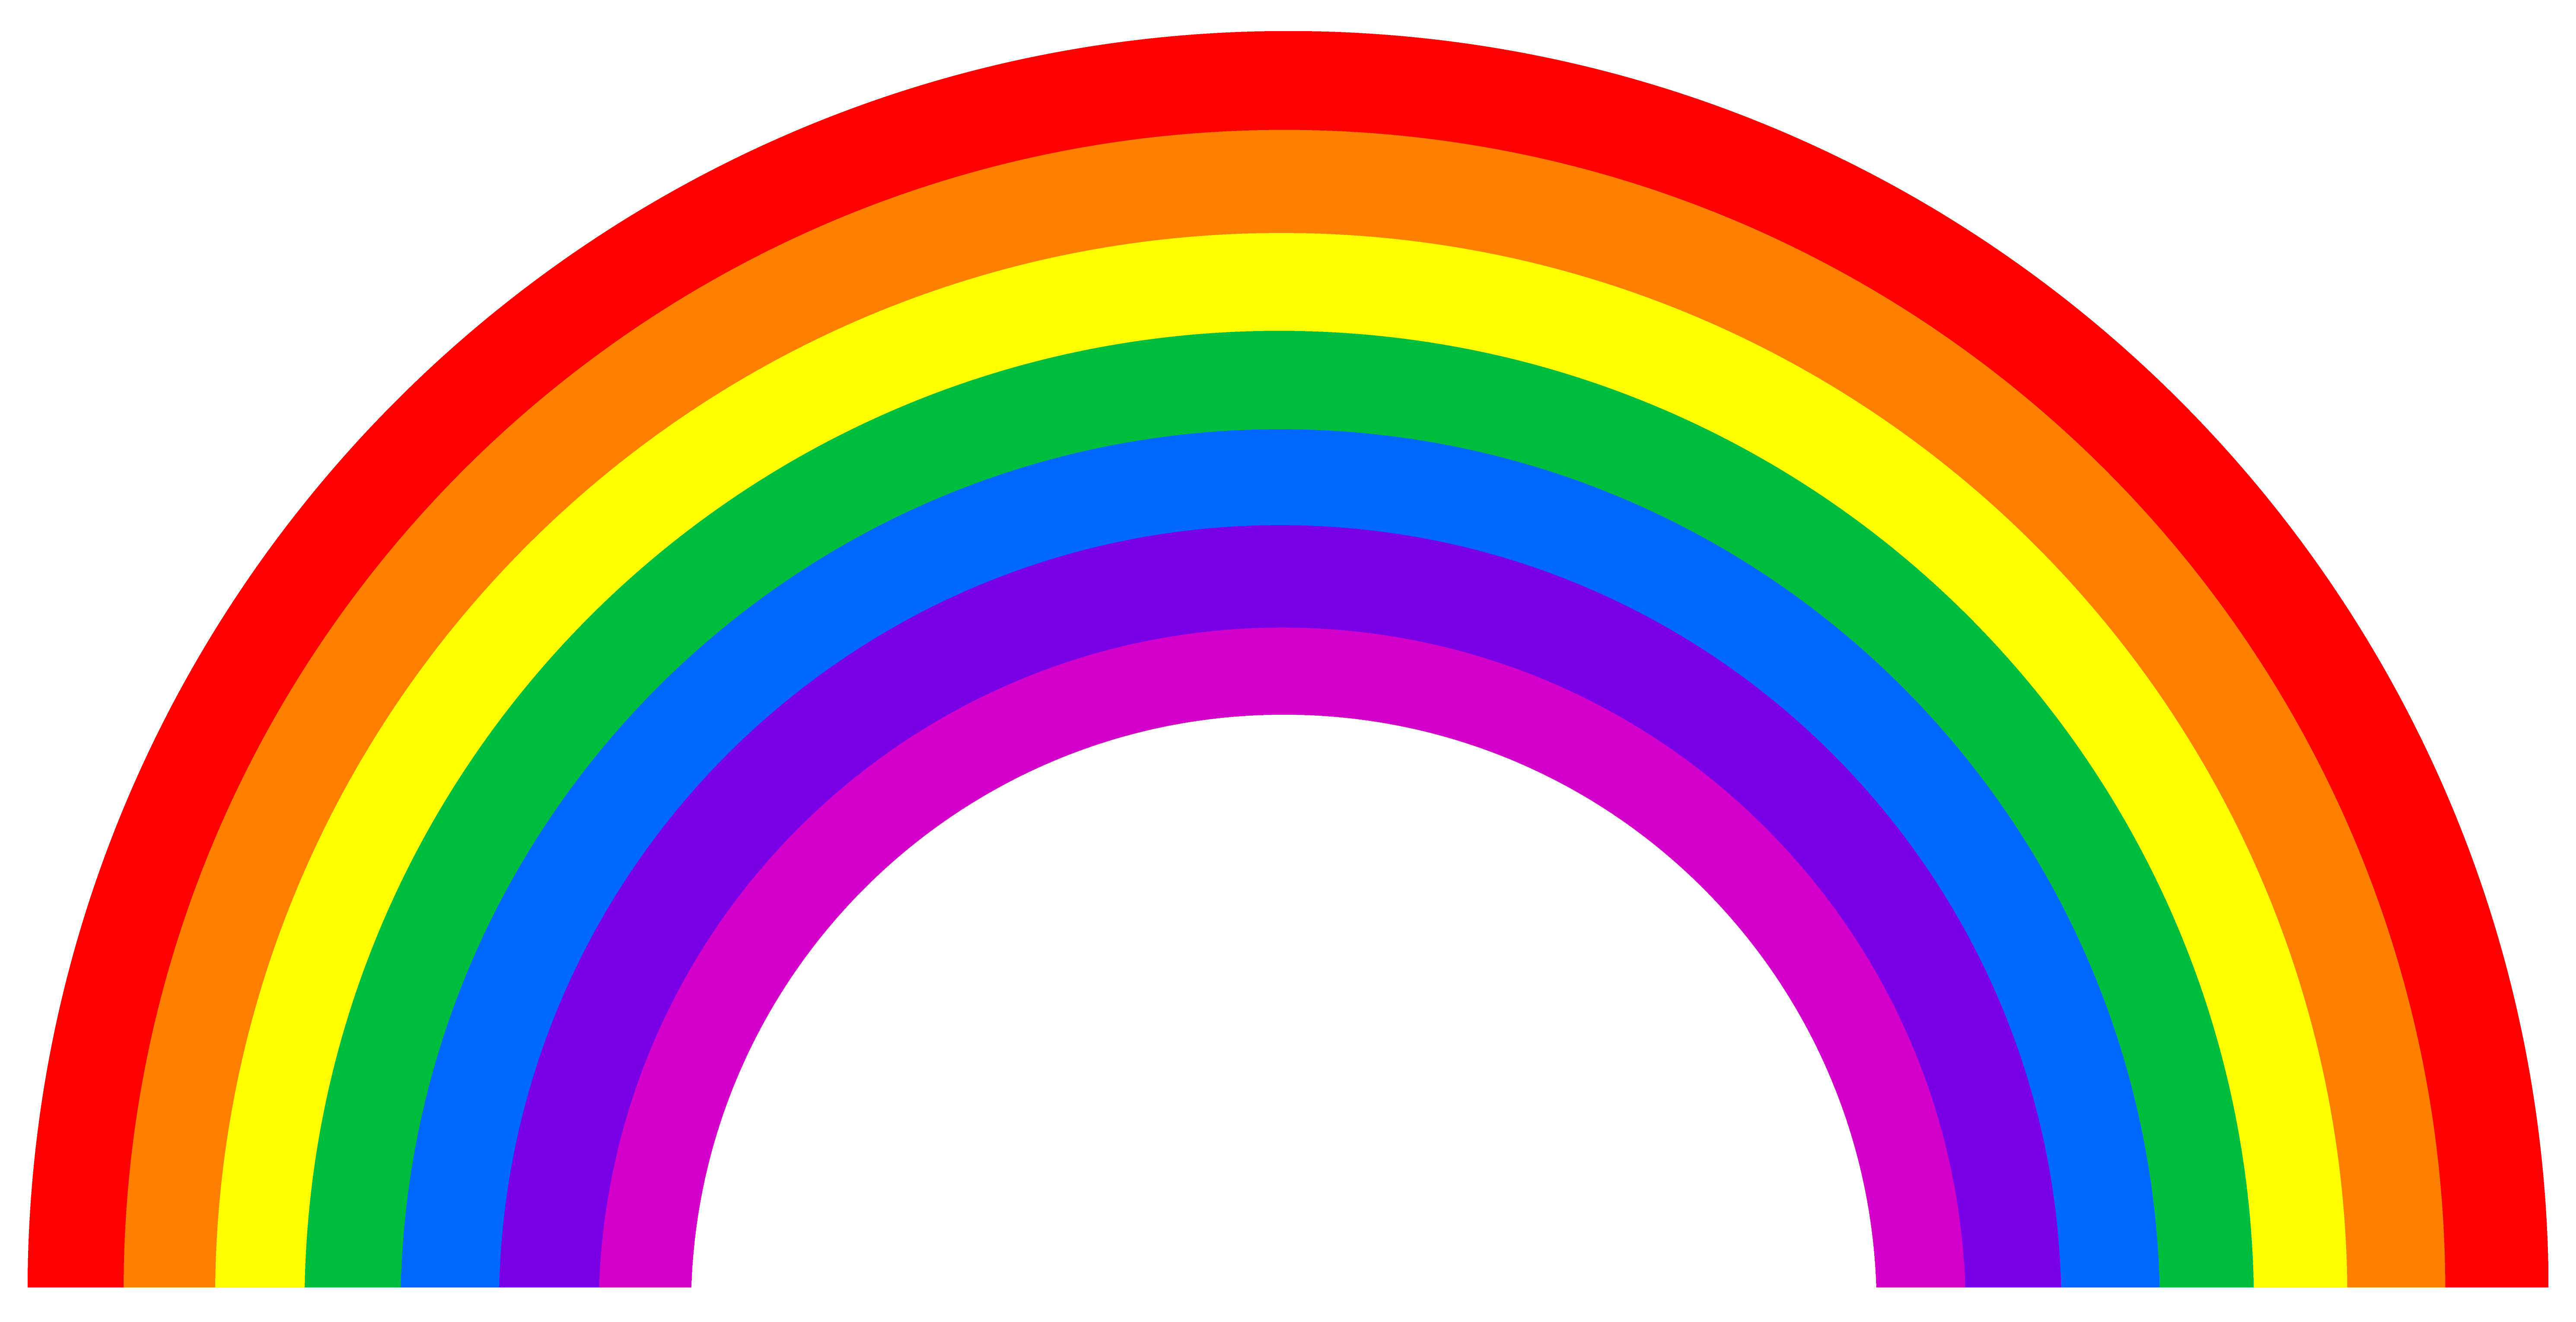 Free Colorful Rainbow Clip Ar